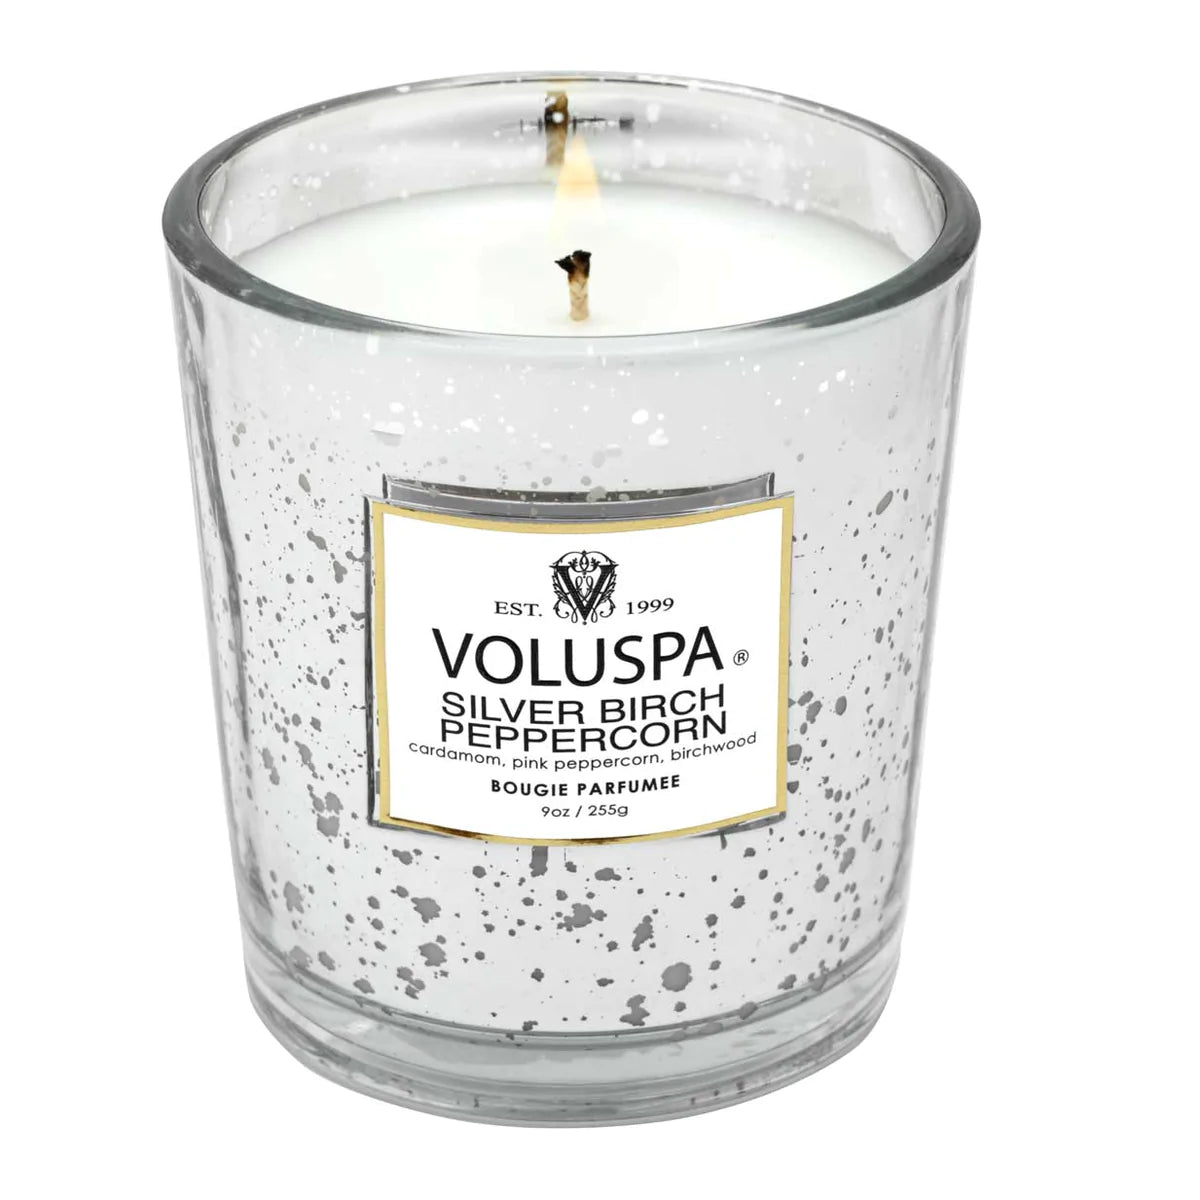 Voluspa - 9 oz Classic Candle - Silver Birch Peppercorn